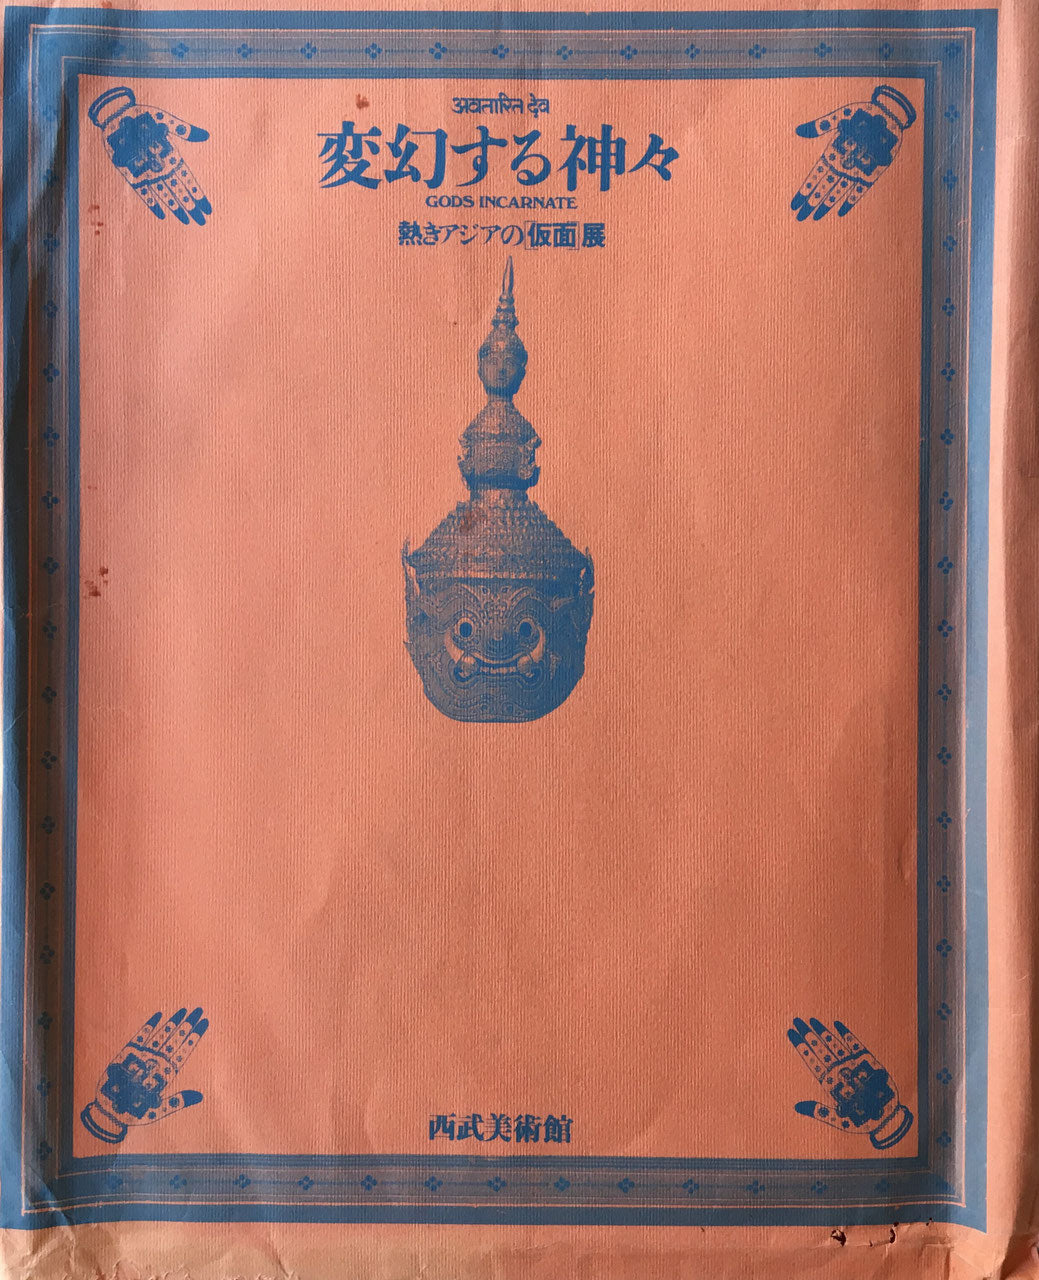 変幻する神々 アジアの仮面 神々の跳梁 杉浦康平 – smokebooks shop